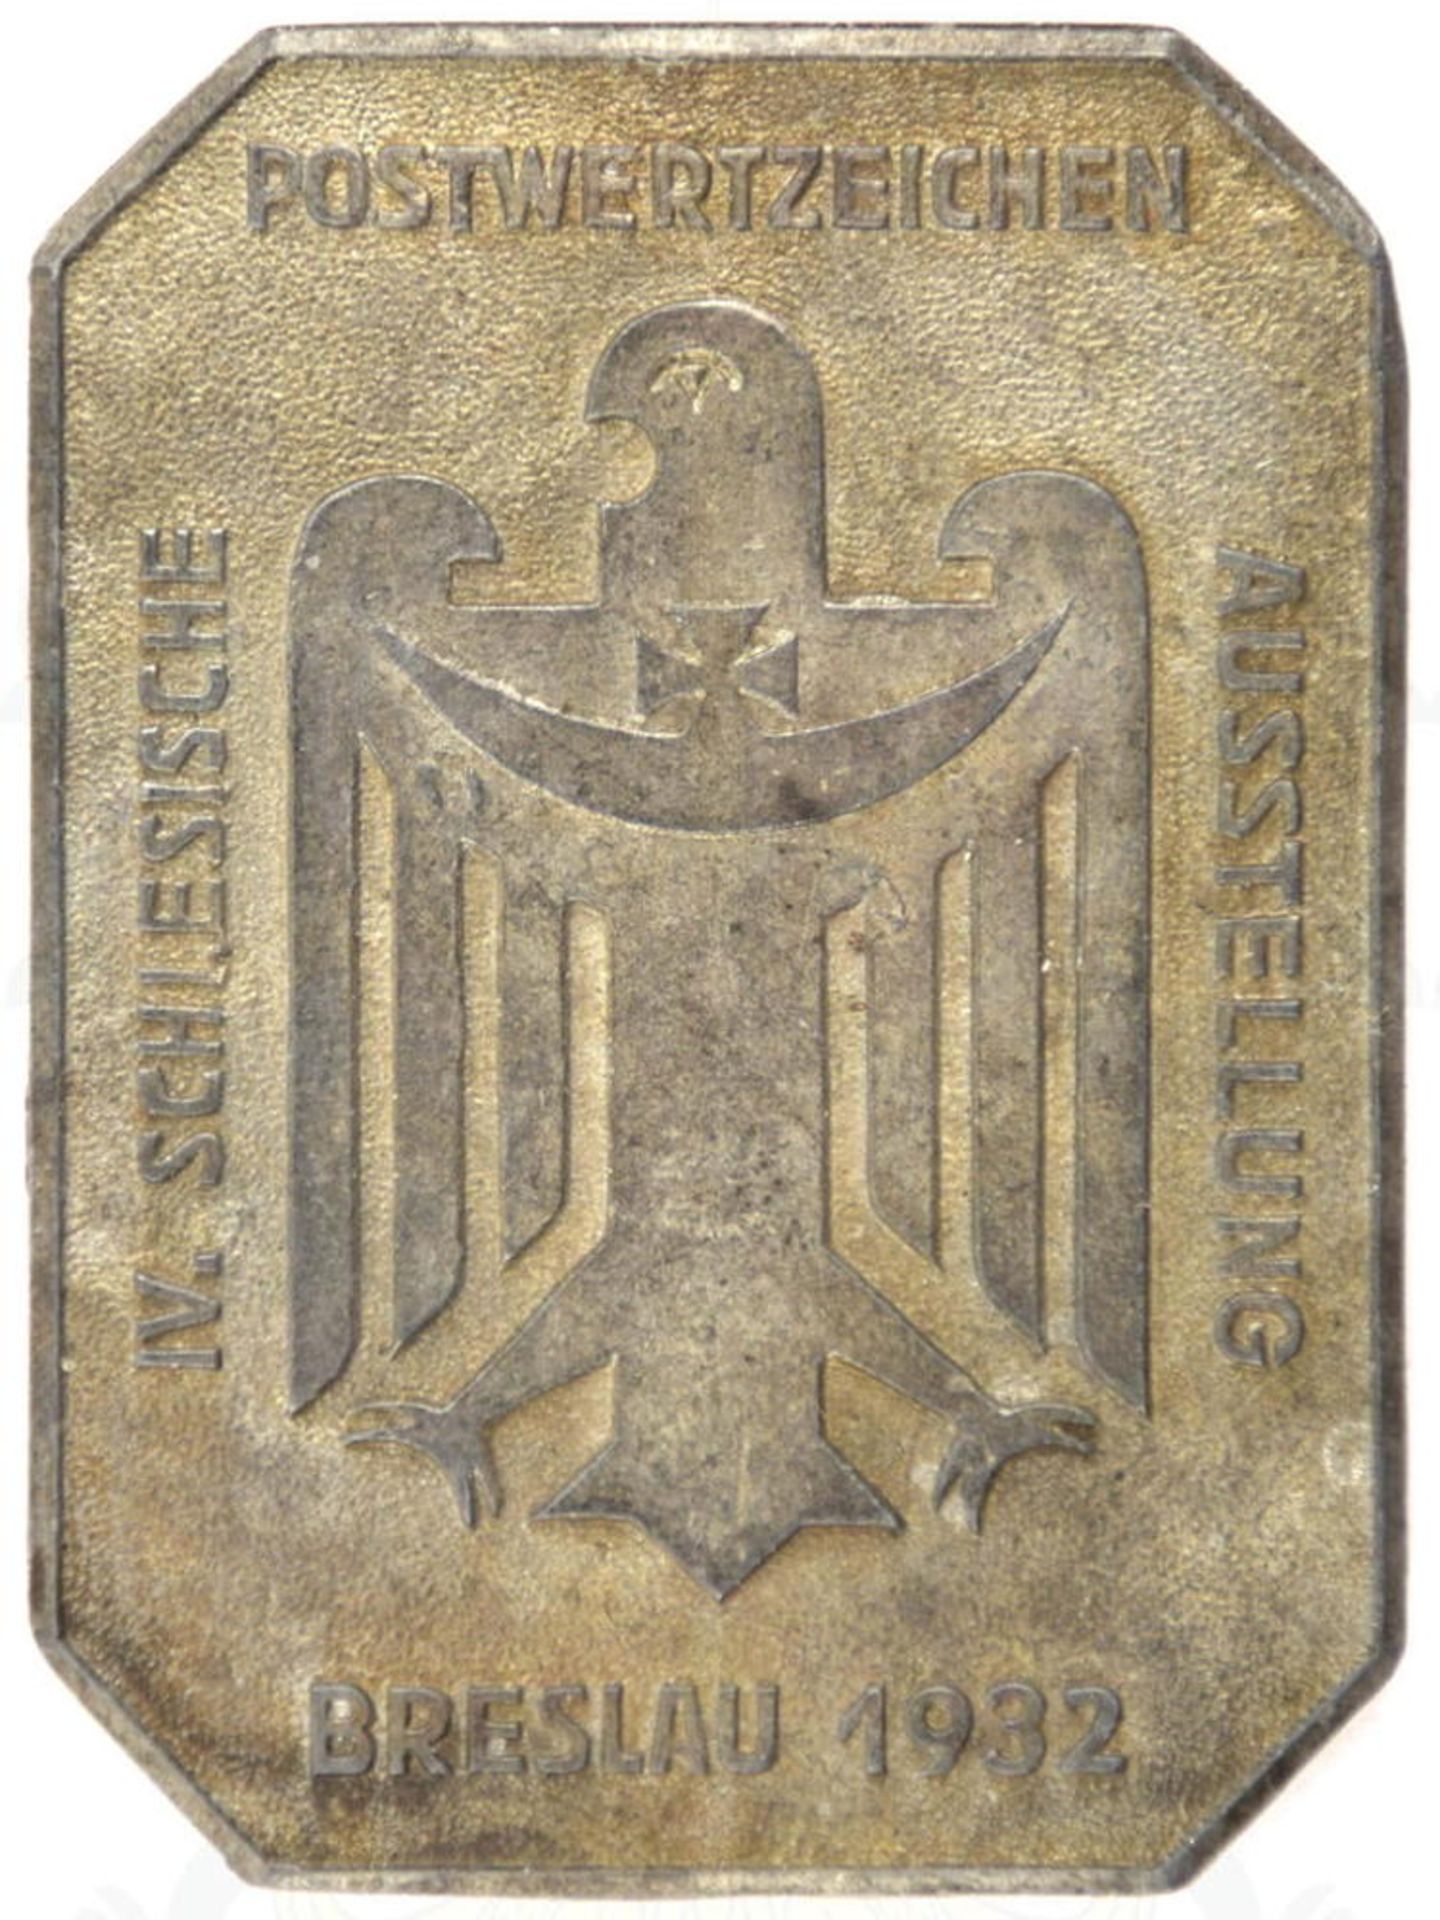 PLAKETTE IV. SCHLESISCHE POSTWERTZEICHEN-AUSSTELLUNG, Breslau 1932, Feinzink, m. Schlesischen Adler,